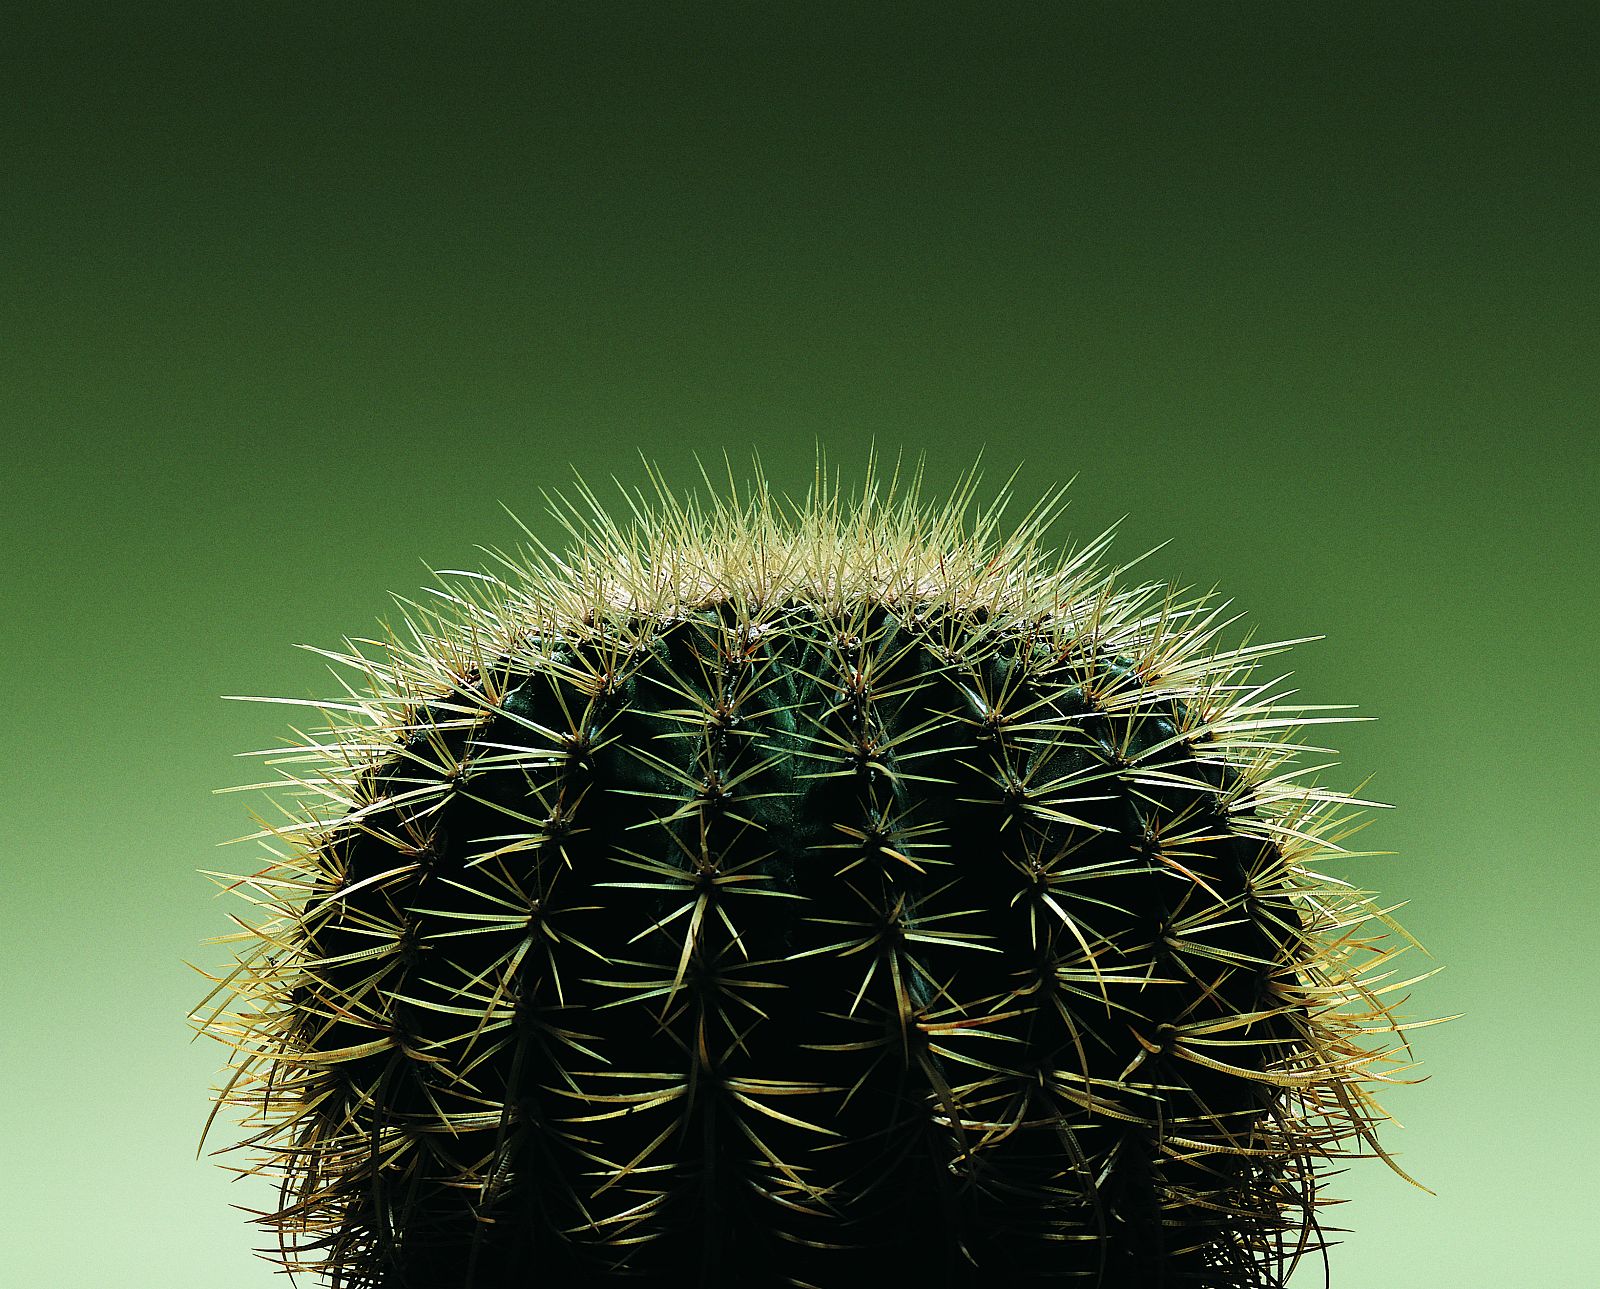 En algunas tiendas, normalmente situados al lado de la caja, hay pequeños cactus que se venden como `Cactus de ordenador¿